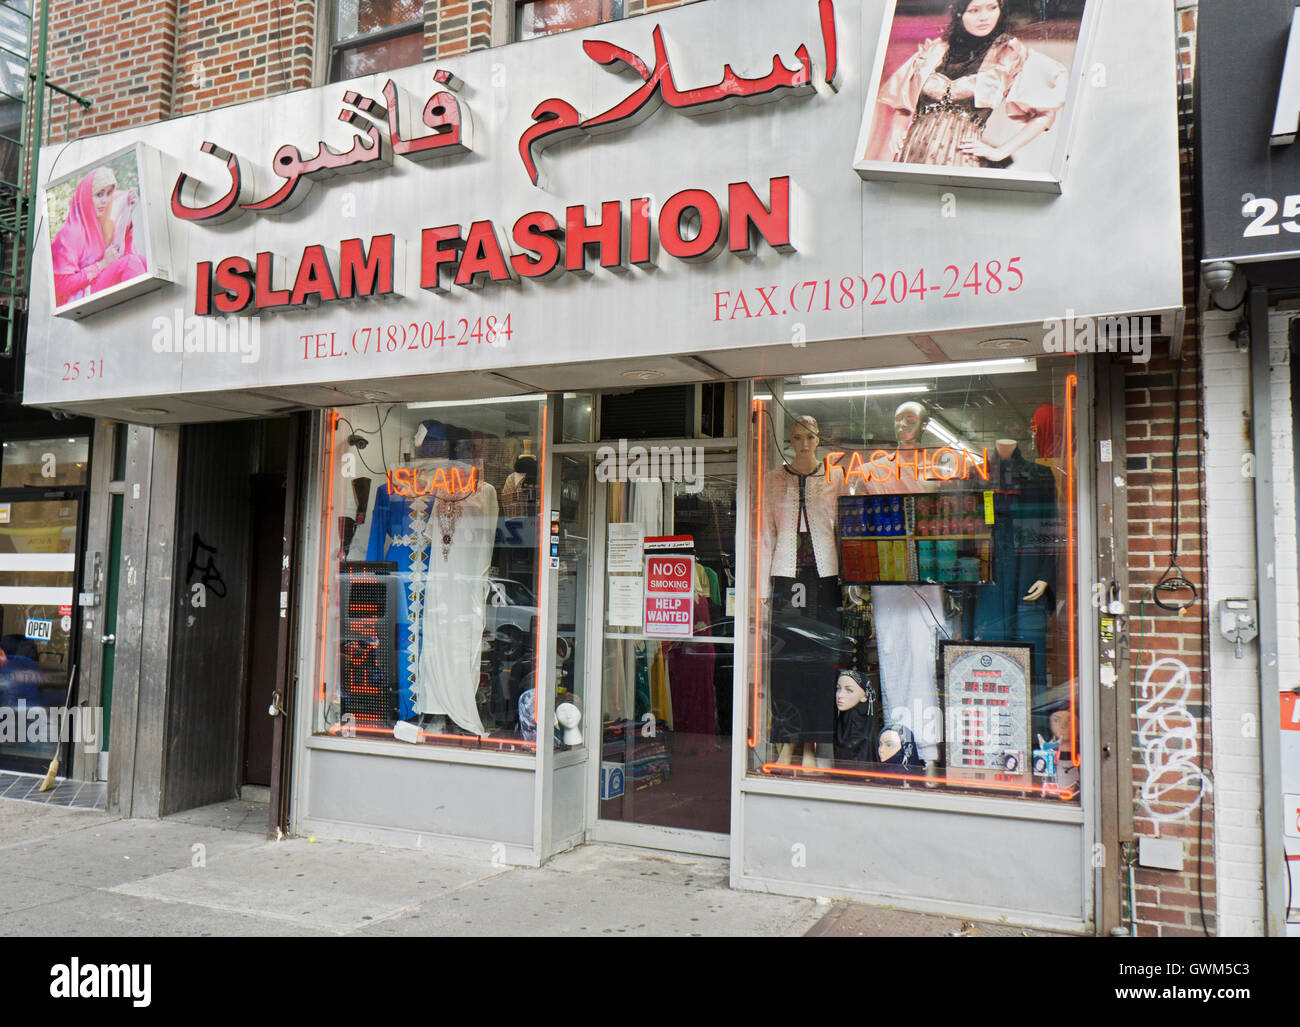 El islam tienda de ropa de moda en la calle Steinway en la pequeña sección de Egipto de Astoria, Queens, Ciudad de Nueva York Foto de stock